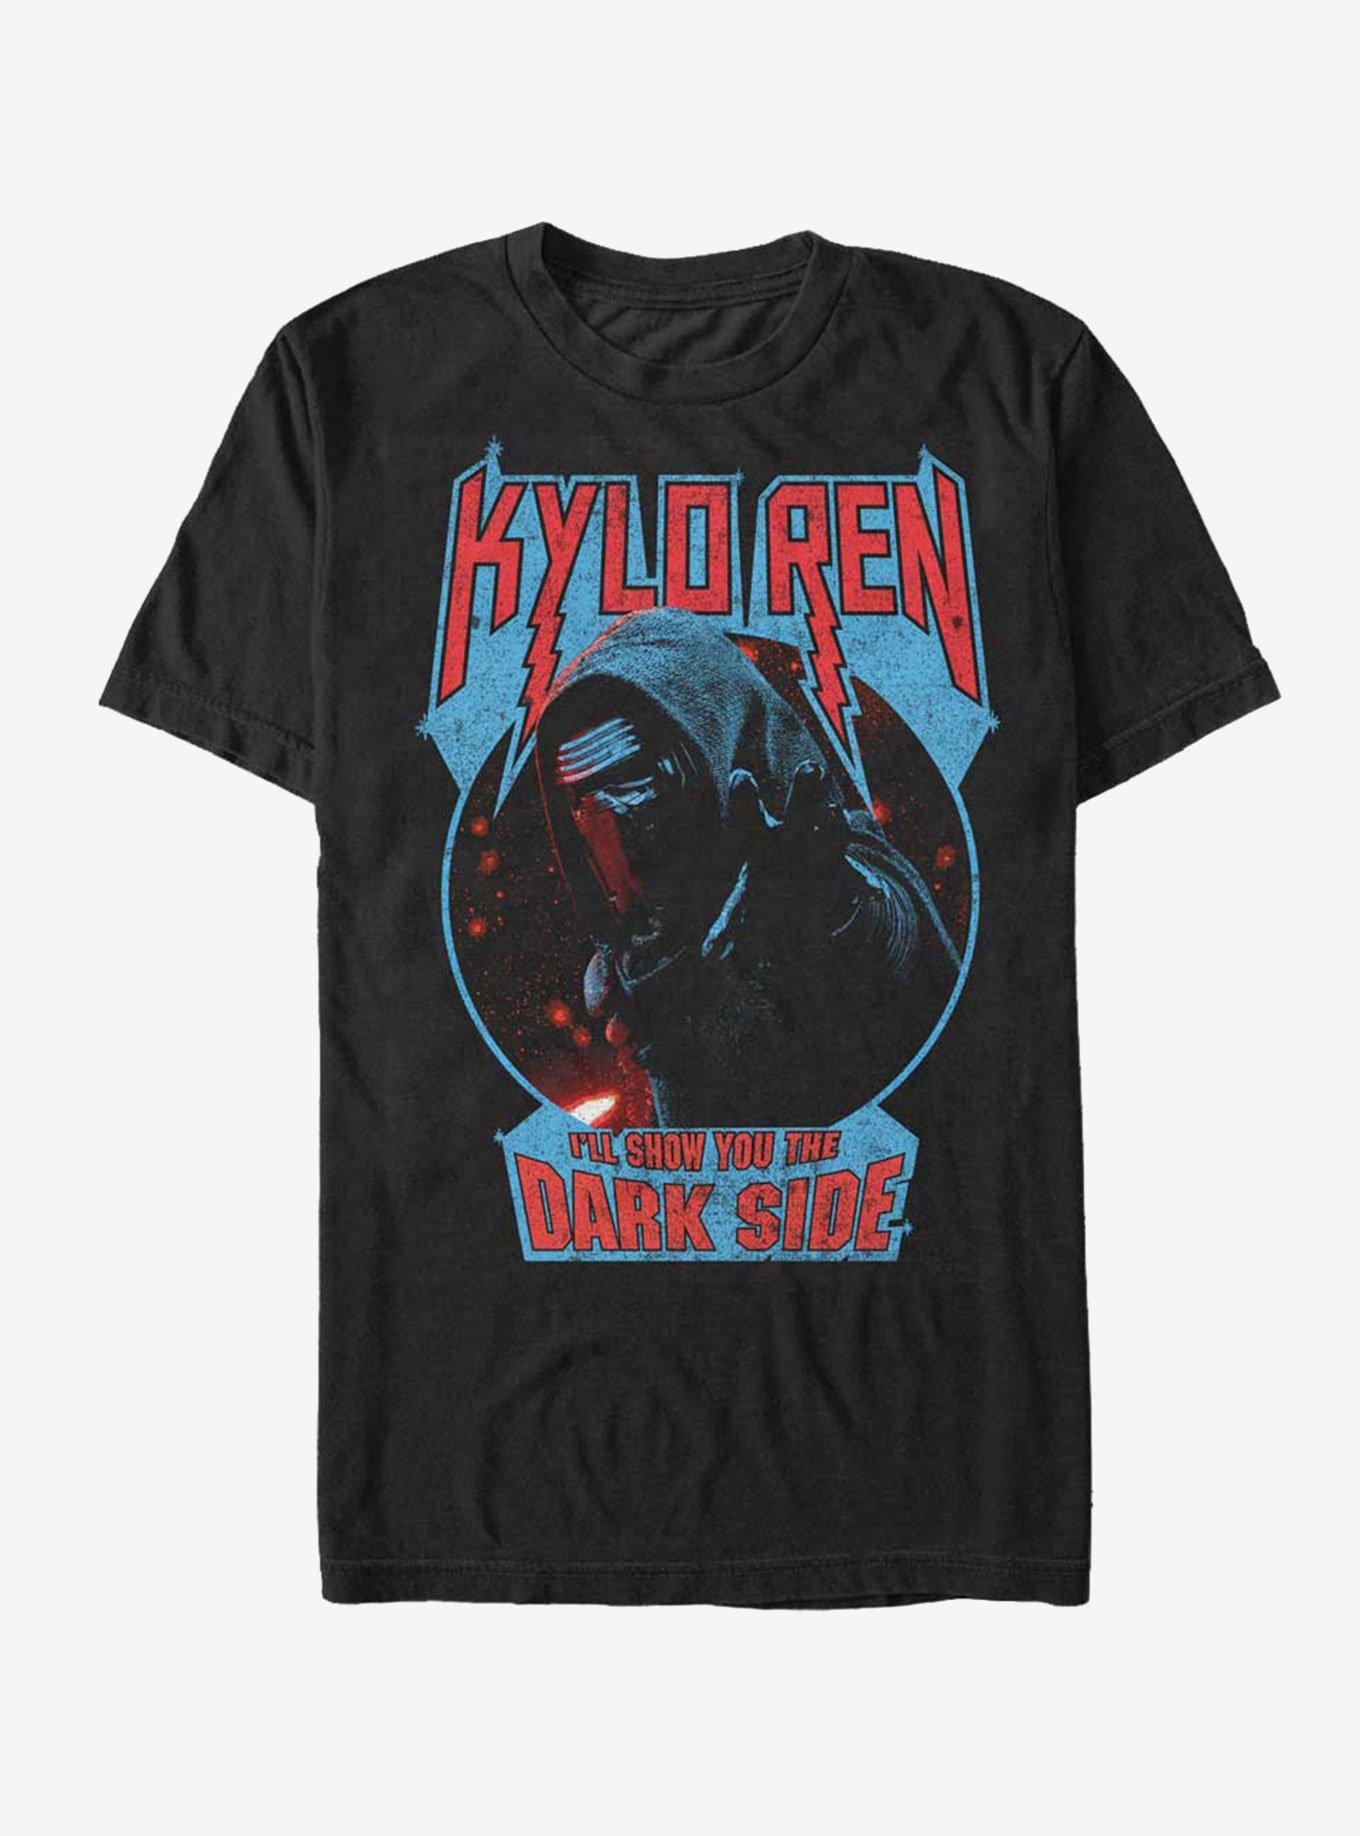 Kylo Ren Women's T-Shirt S-XXL Sizes Officially Licensed Star Wars